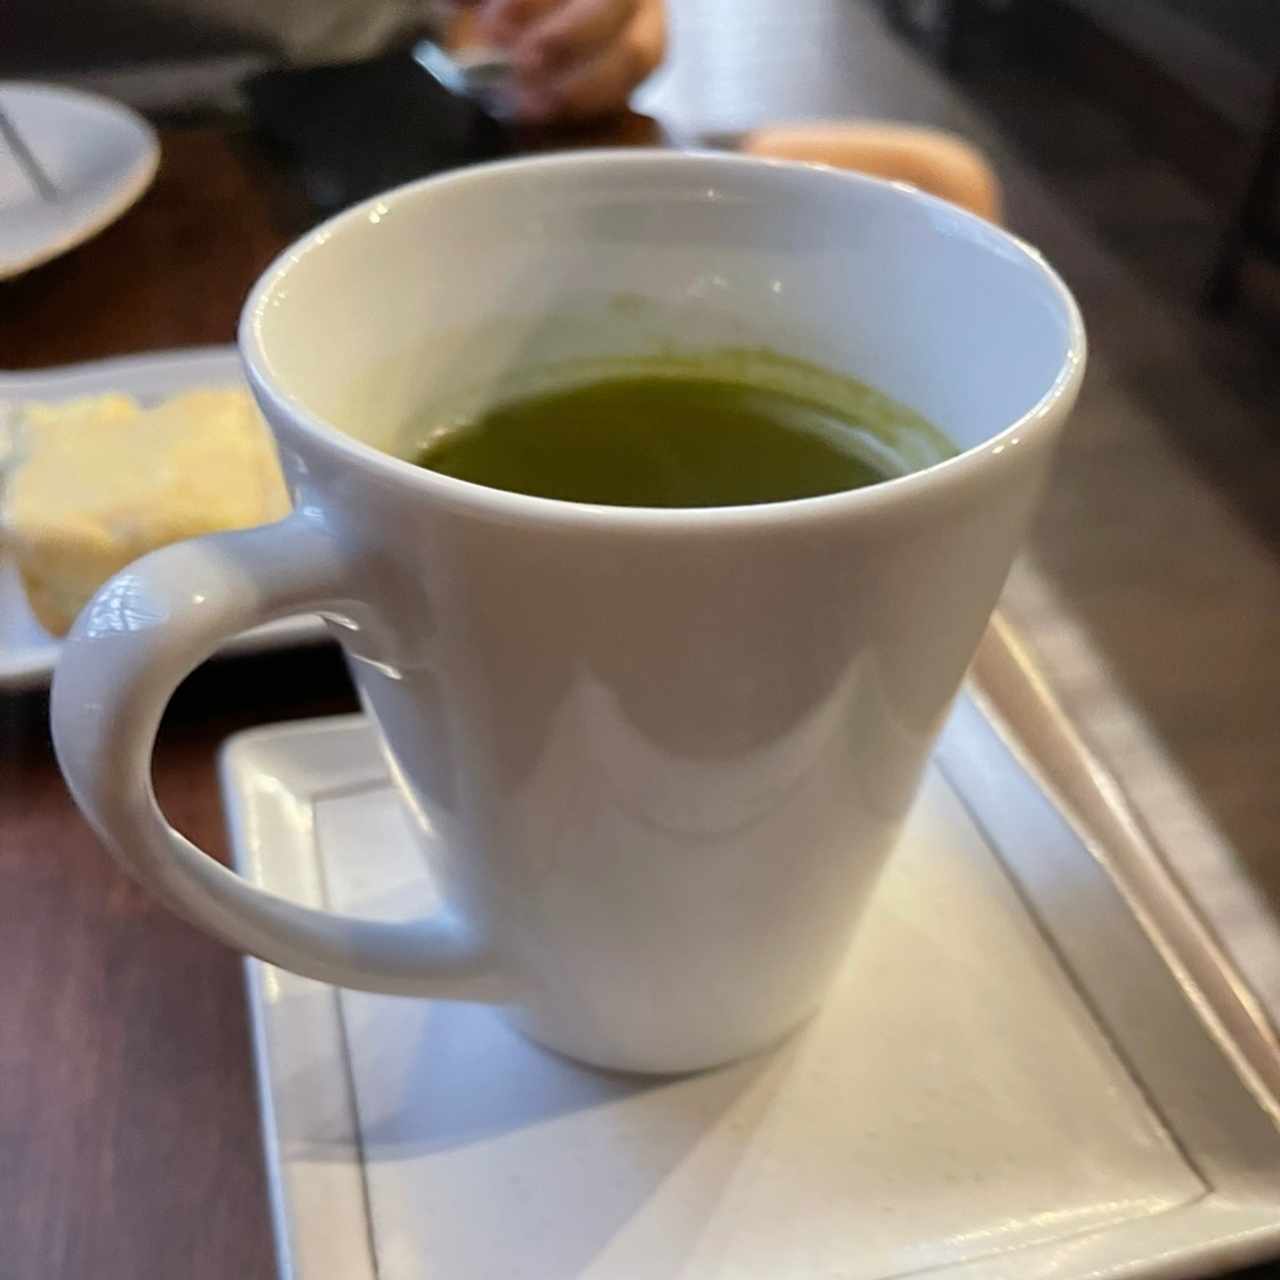 matcha tea